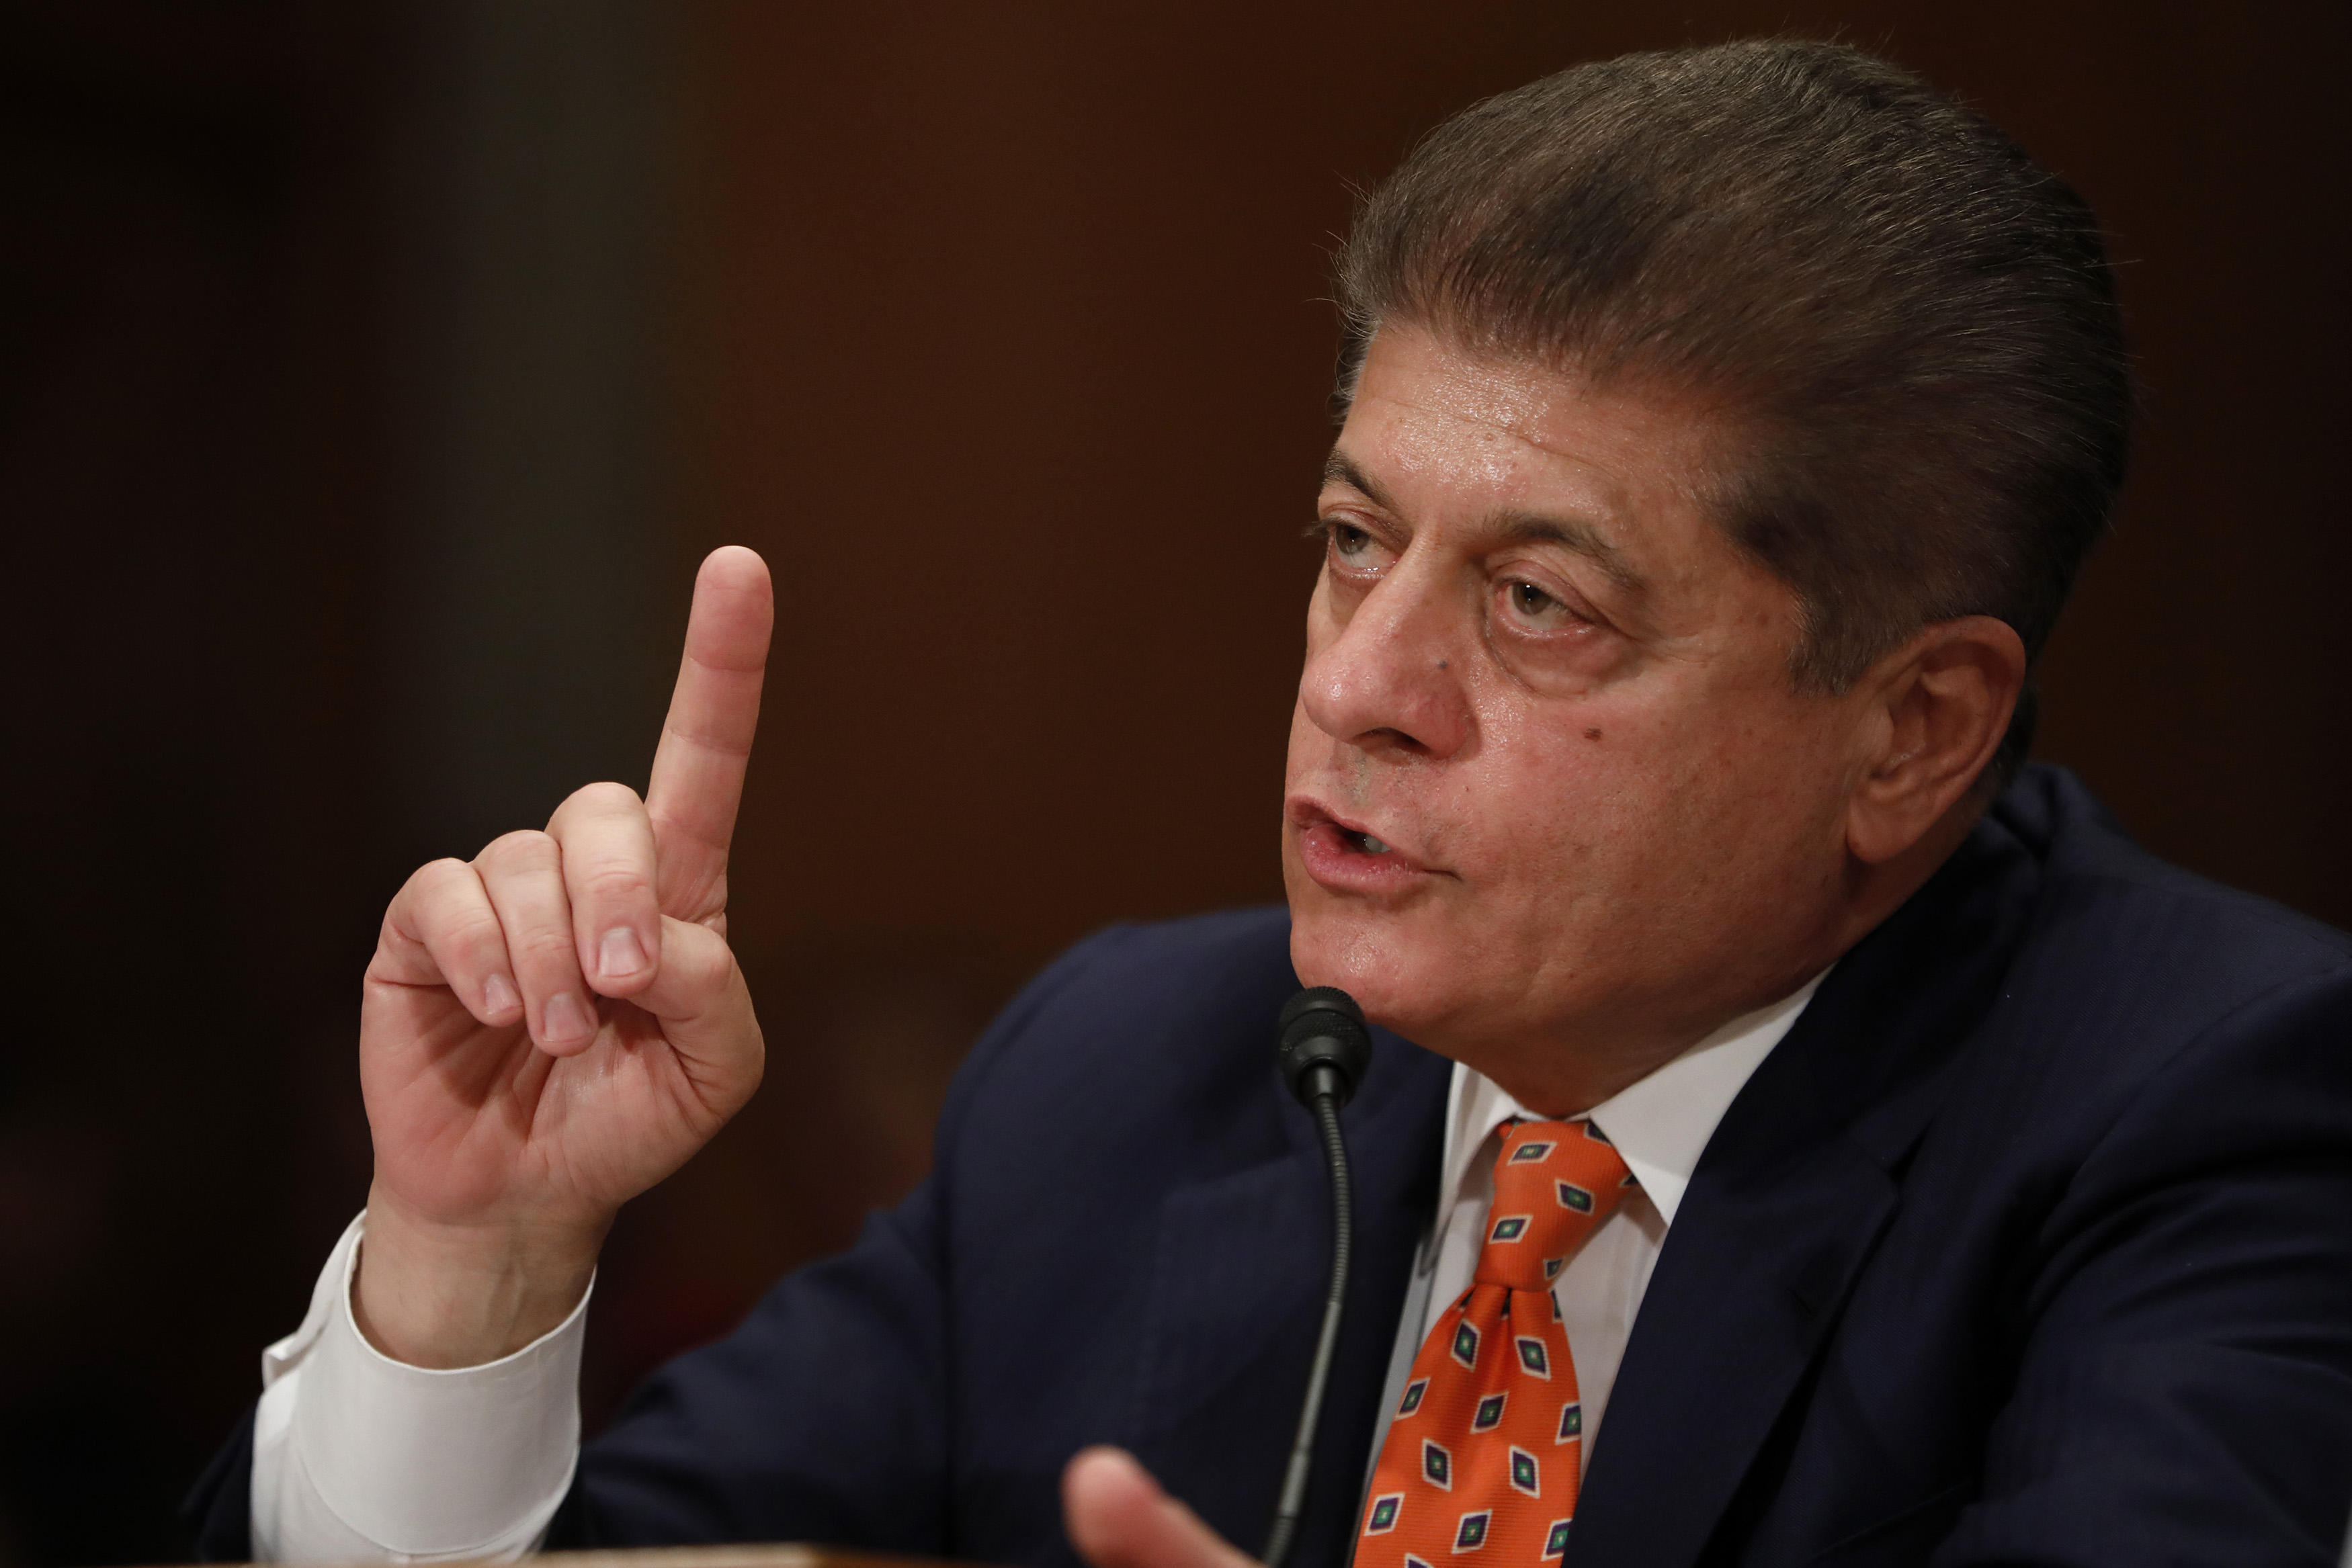 Andrew Napolitano Files Countersuit Alleging Extortion Against Sexual Assault Accuser